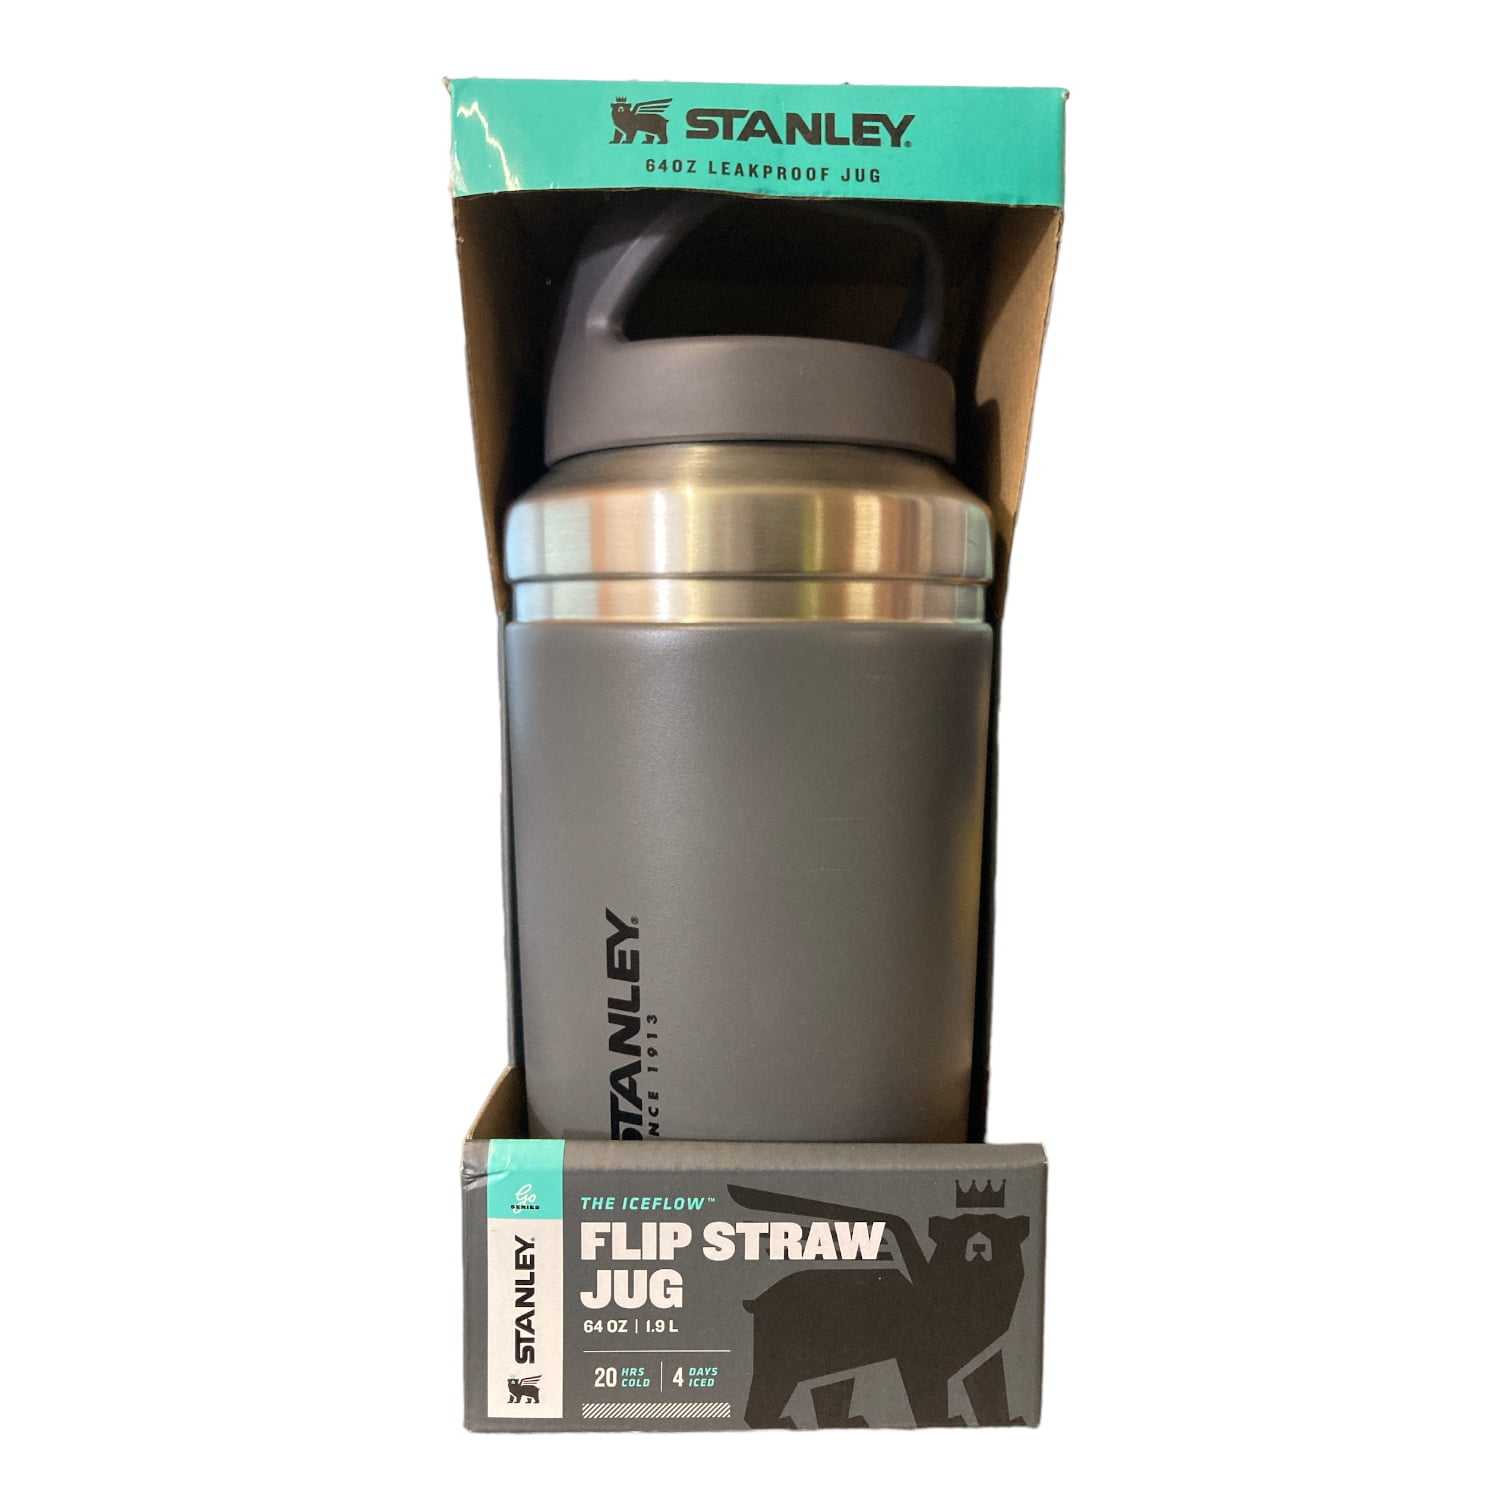 Stanley The IceFlow Flip Straw Jug Alpine 64 oz